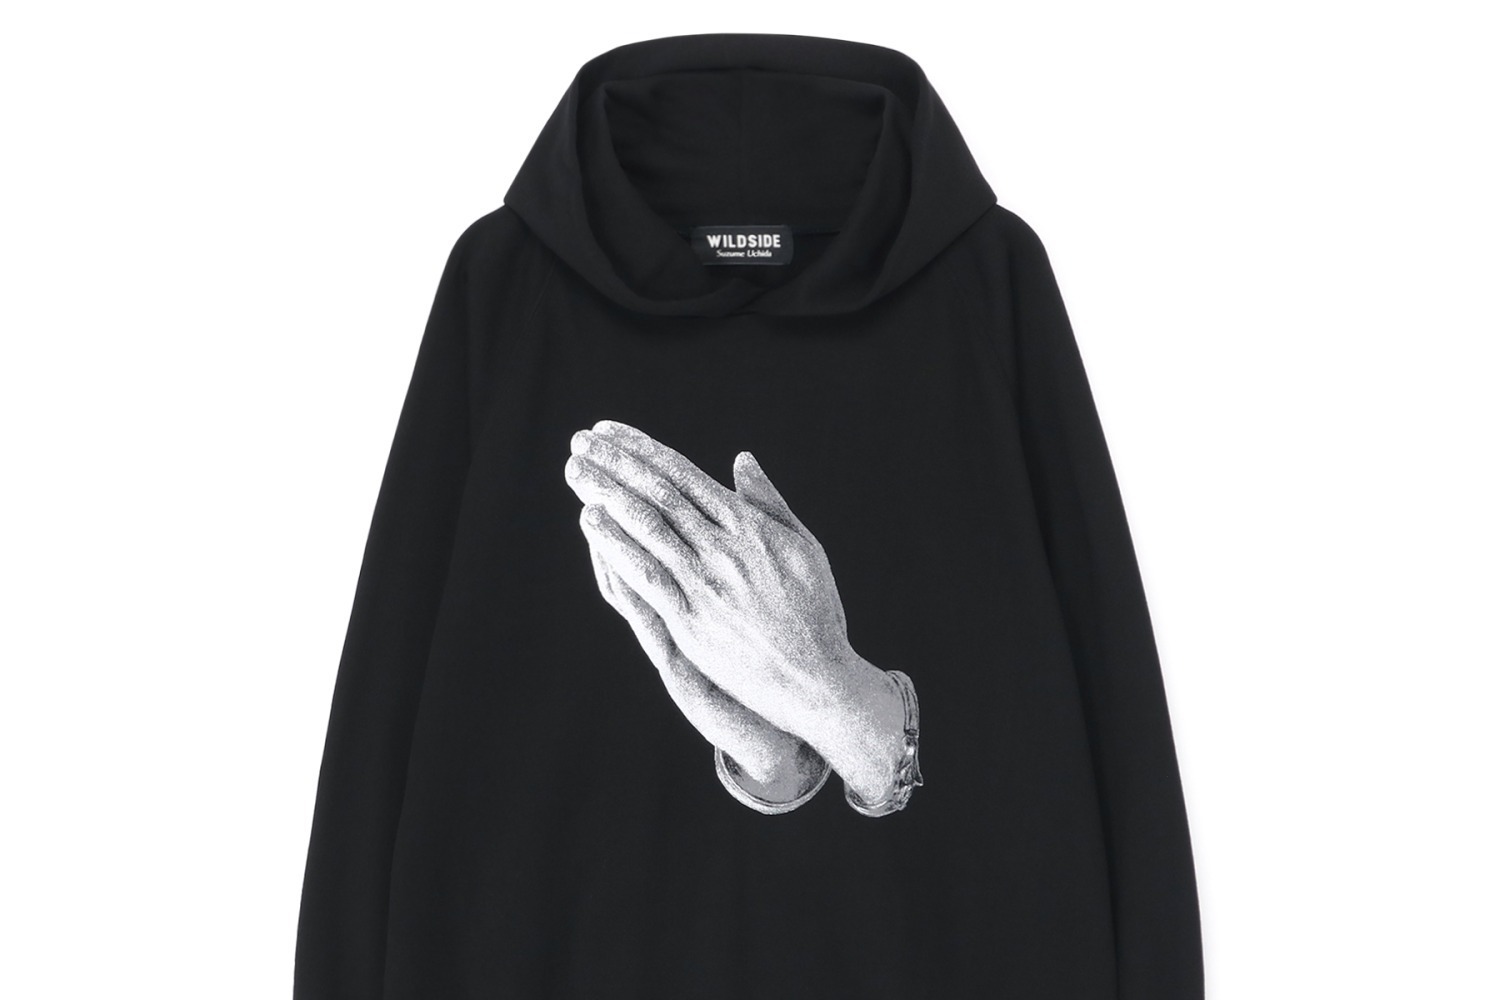 ワイルドサイド ヨウジヤマモト“祈る手”を描いた黒フーディーやロゴT